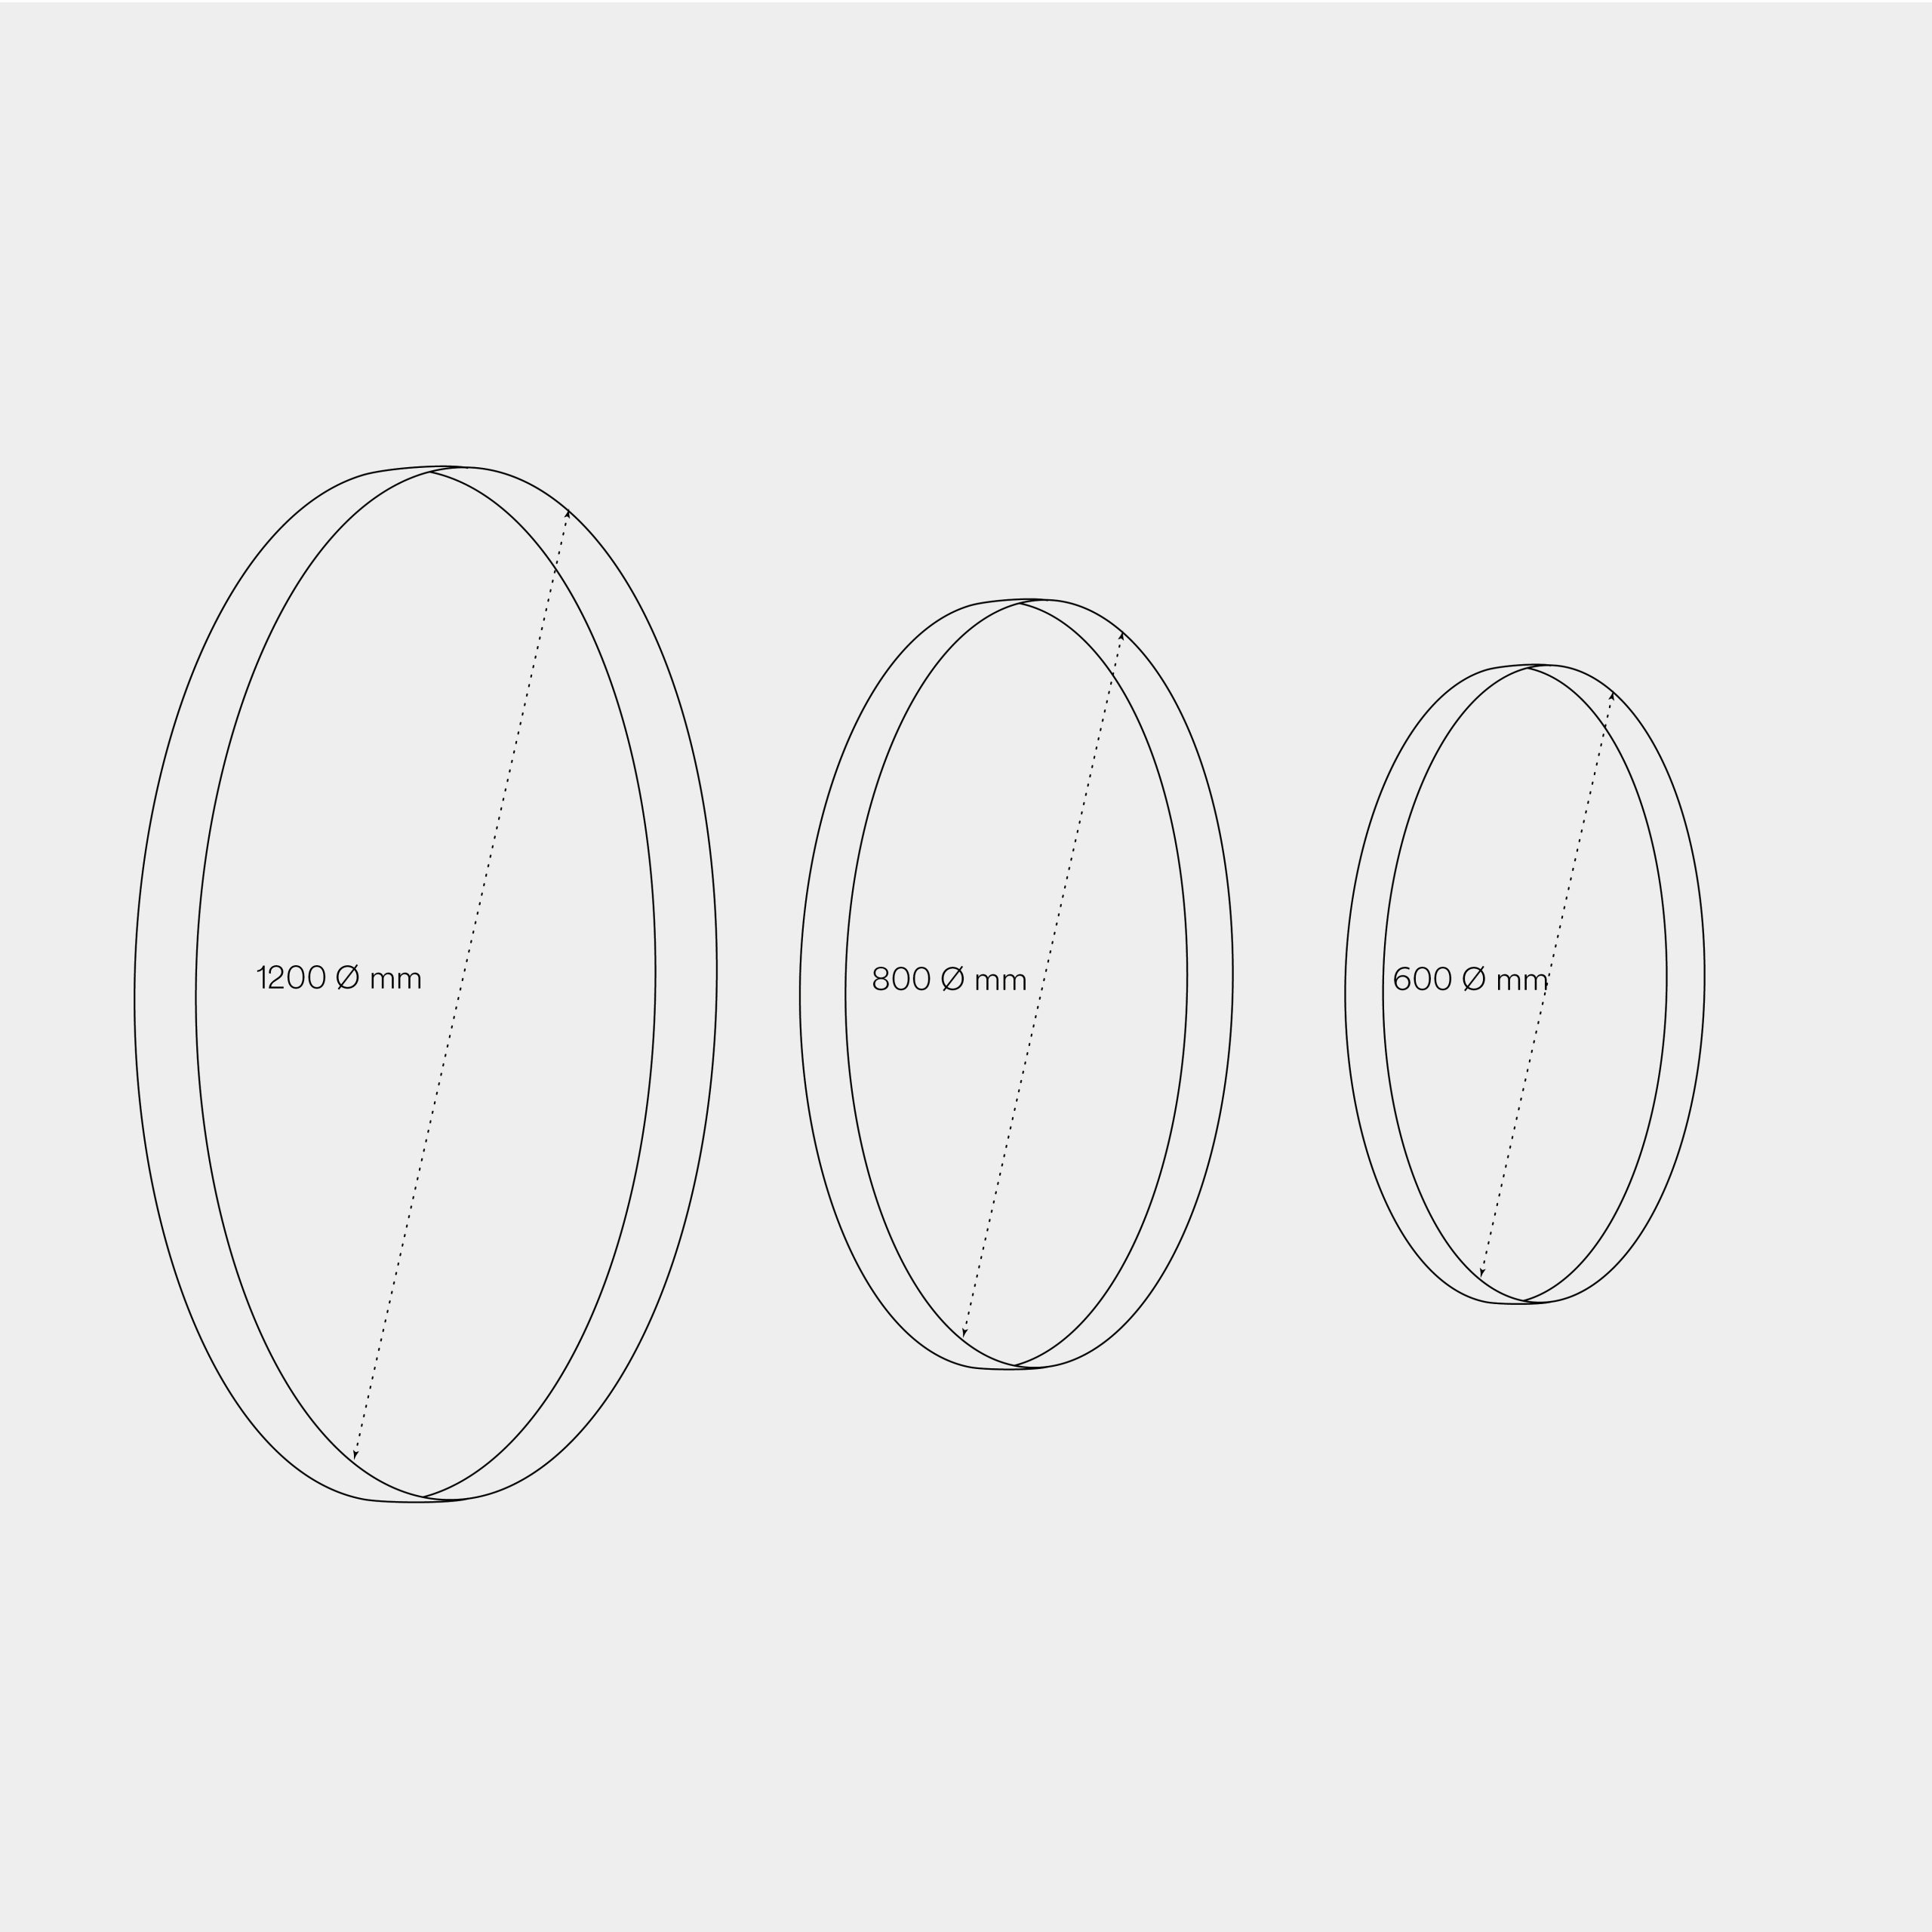 Размеры декоративной акустической панели Circle Foam